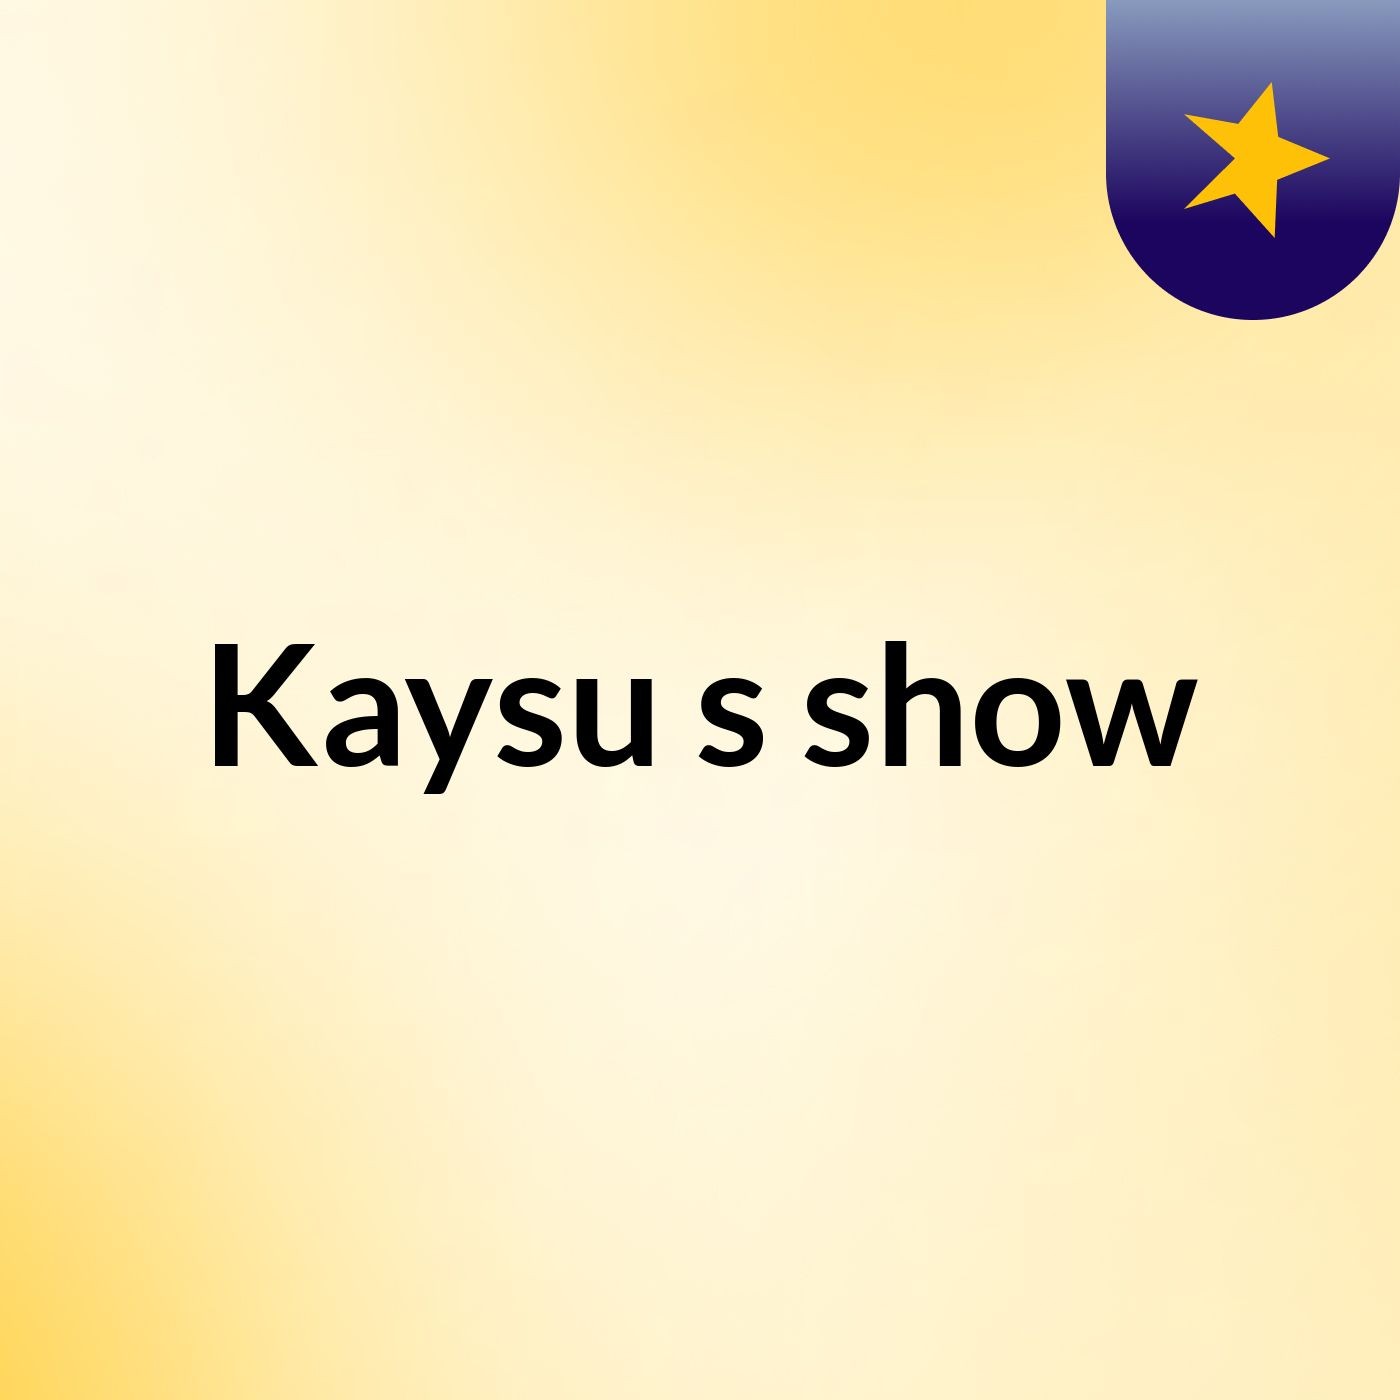 Kaysu's show